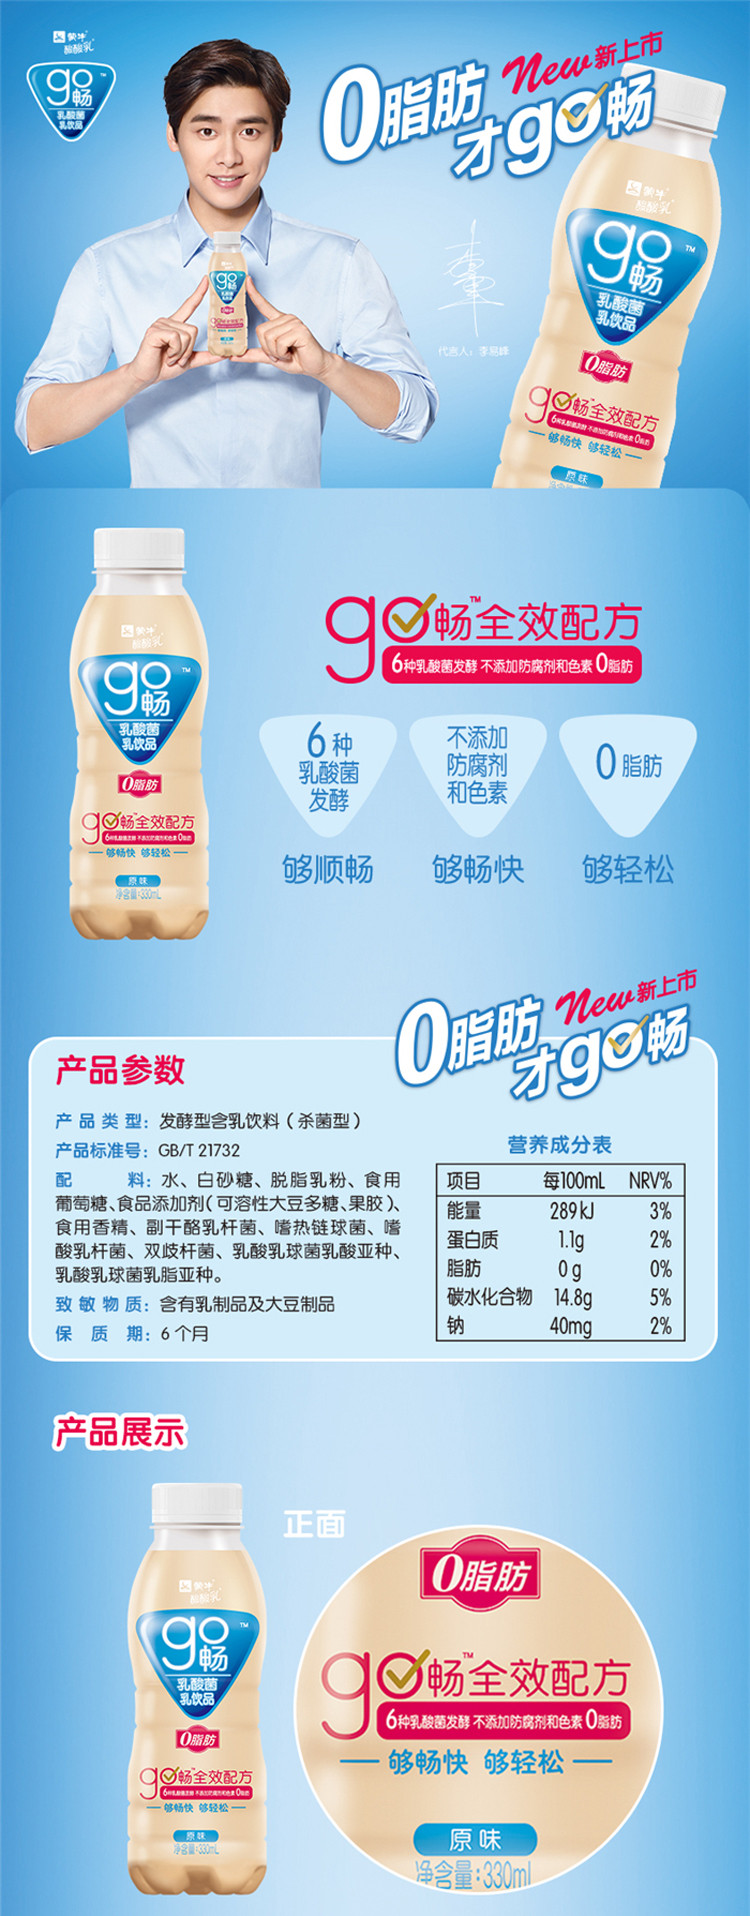 中粮我买网蒙牛酸酸乳go畅乳酸菌乳饮品330ml12瓶